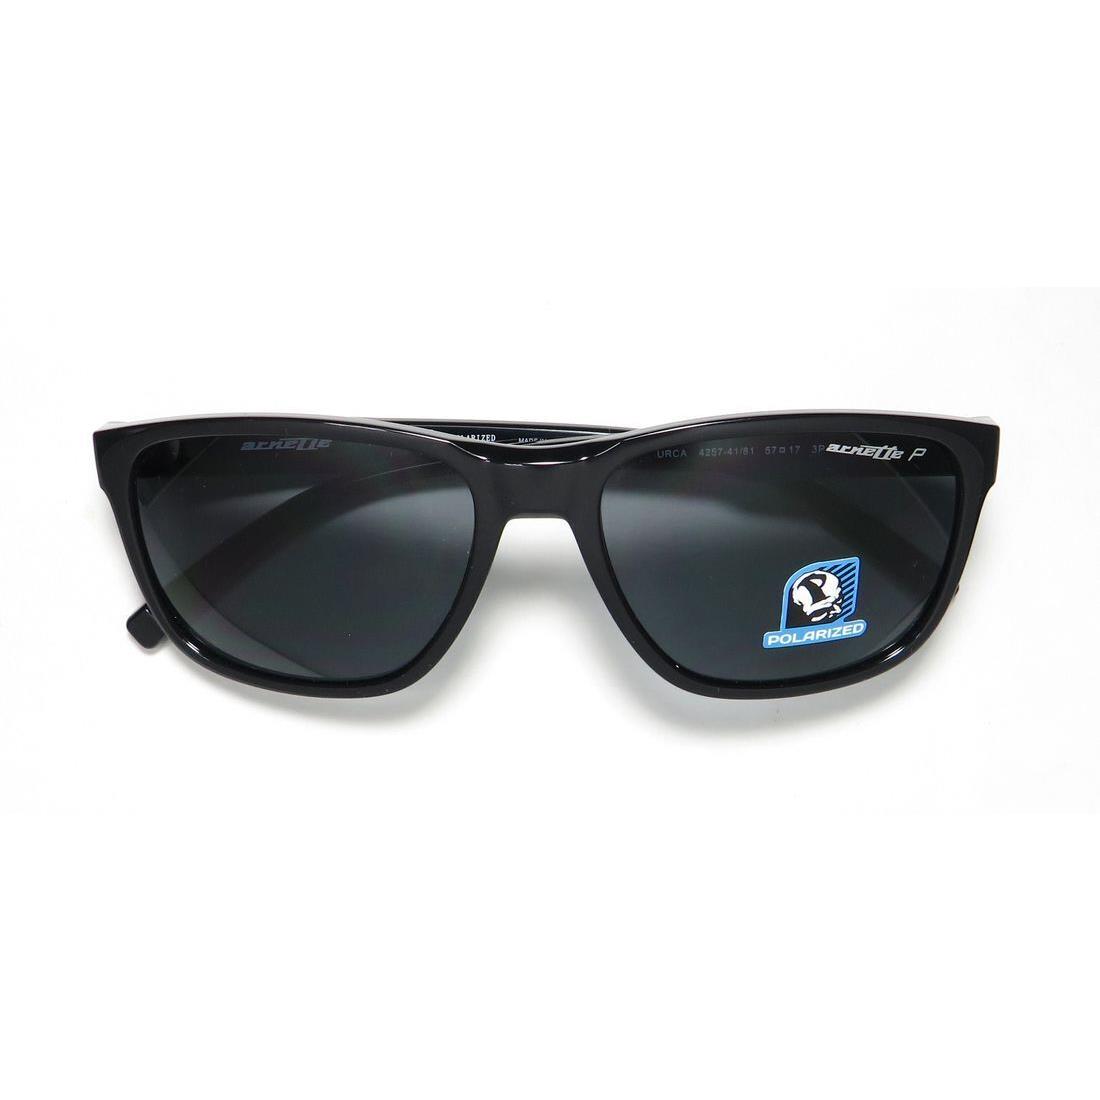 Arnette Urca 4257 Sunglasses Black Full-rim Designer 57-17-140 Unisex 41/81